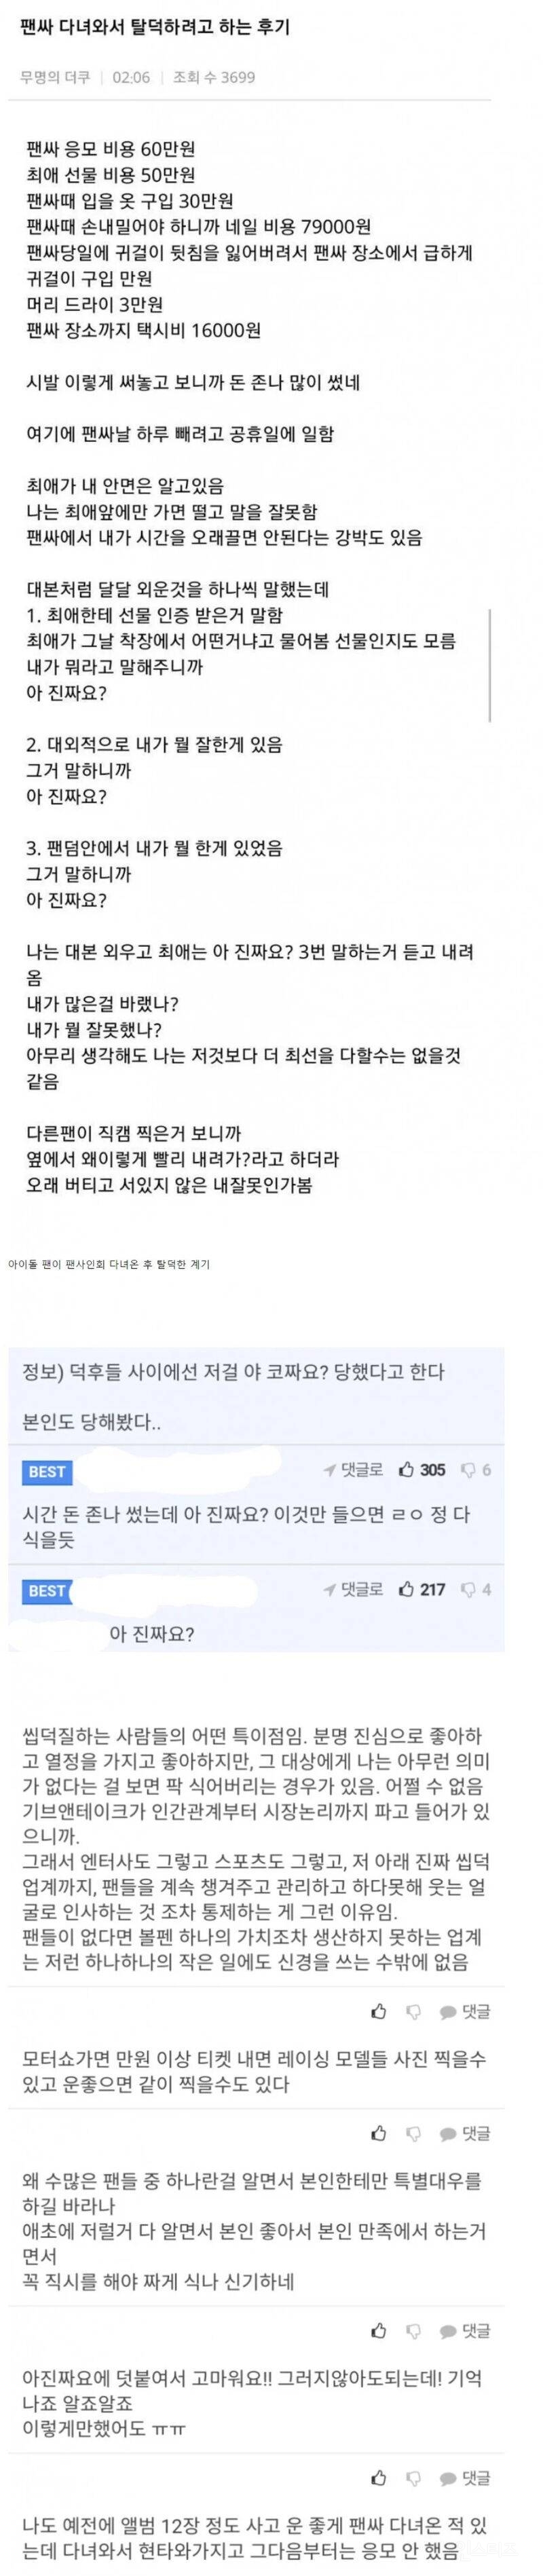 아이돌 팬싸문화를 바꾼 전설의 탈덕 후기 | 인스티즈